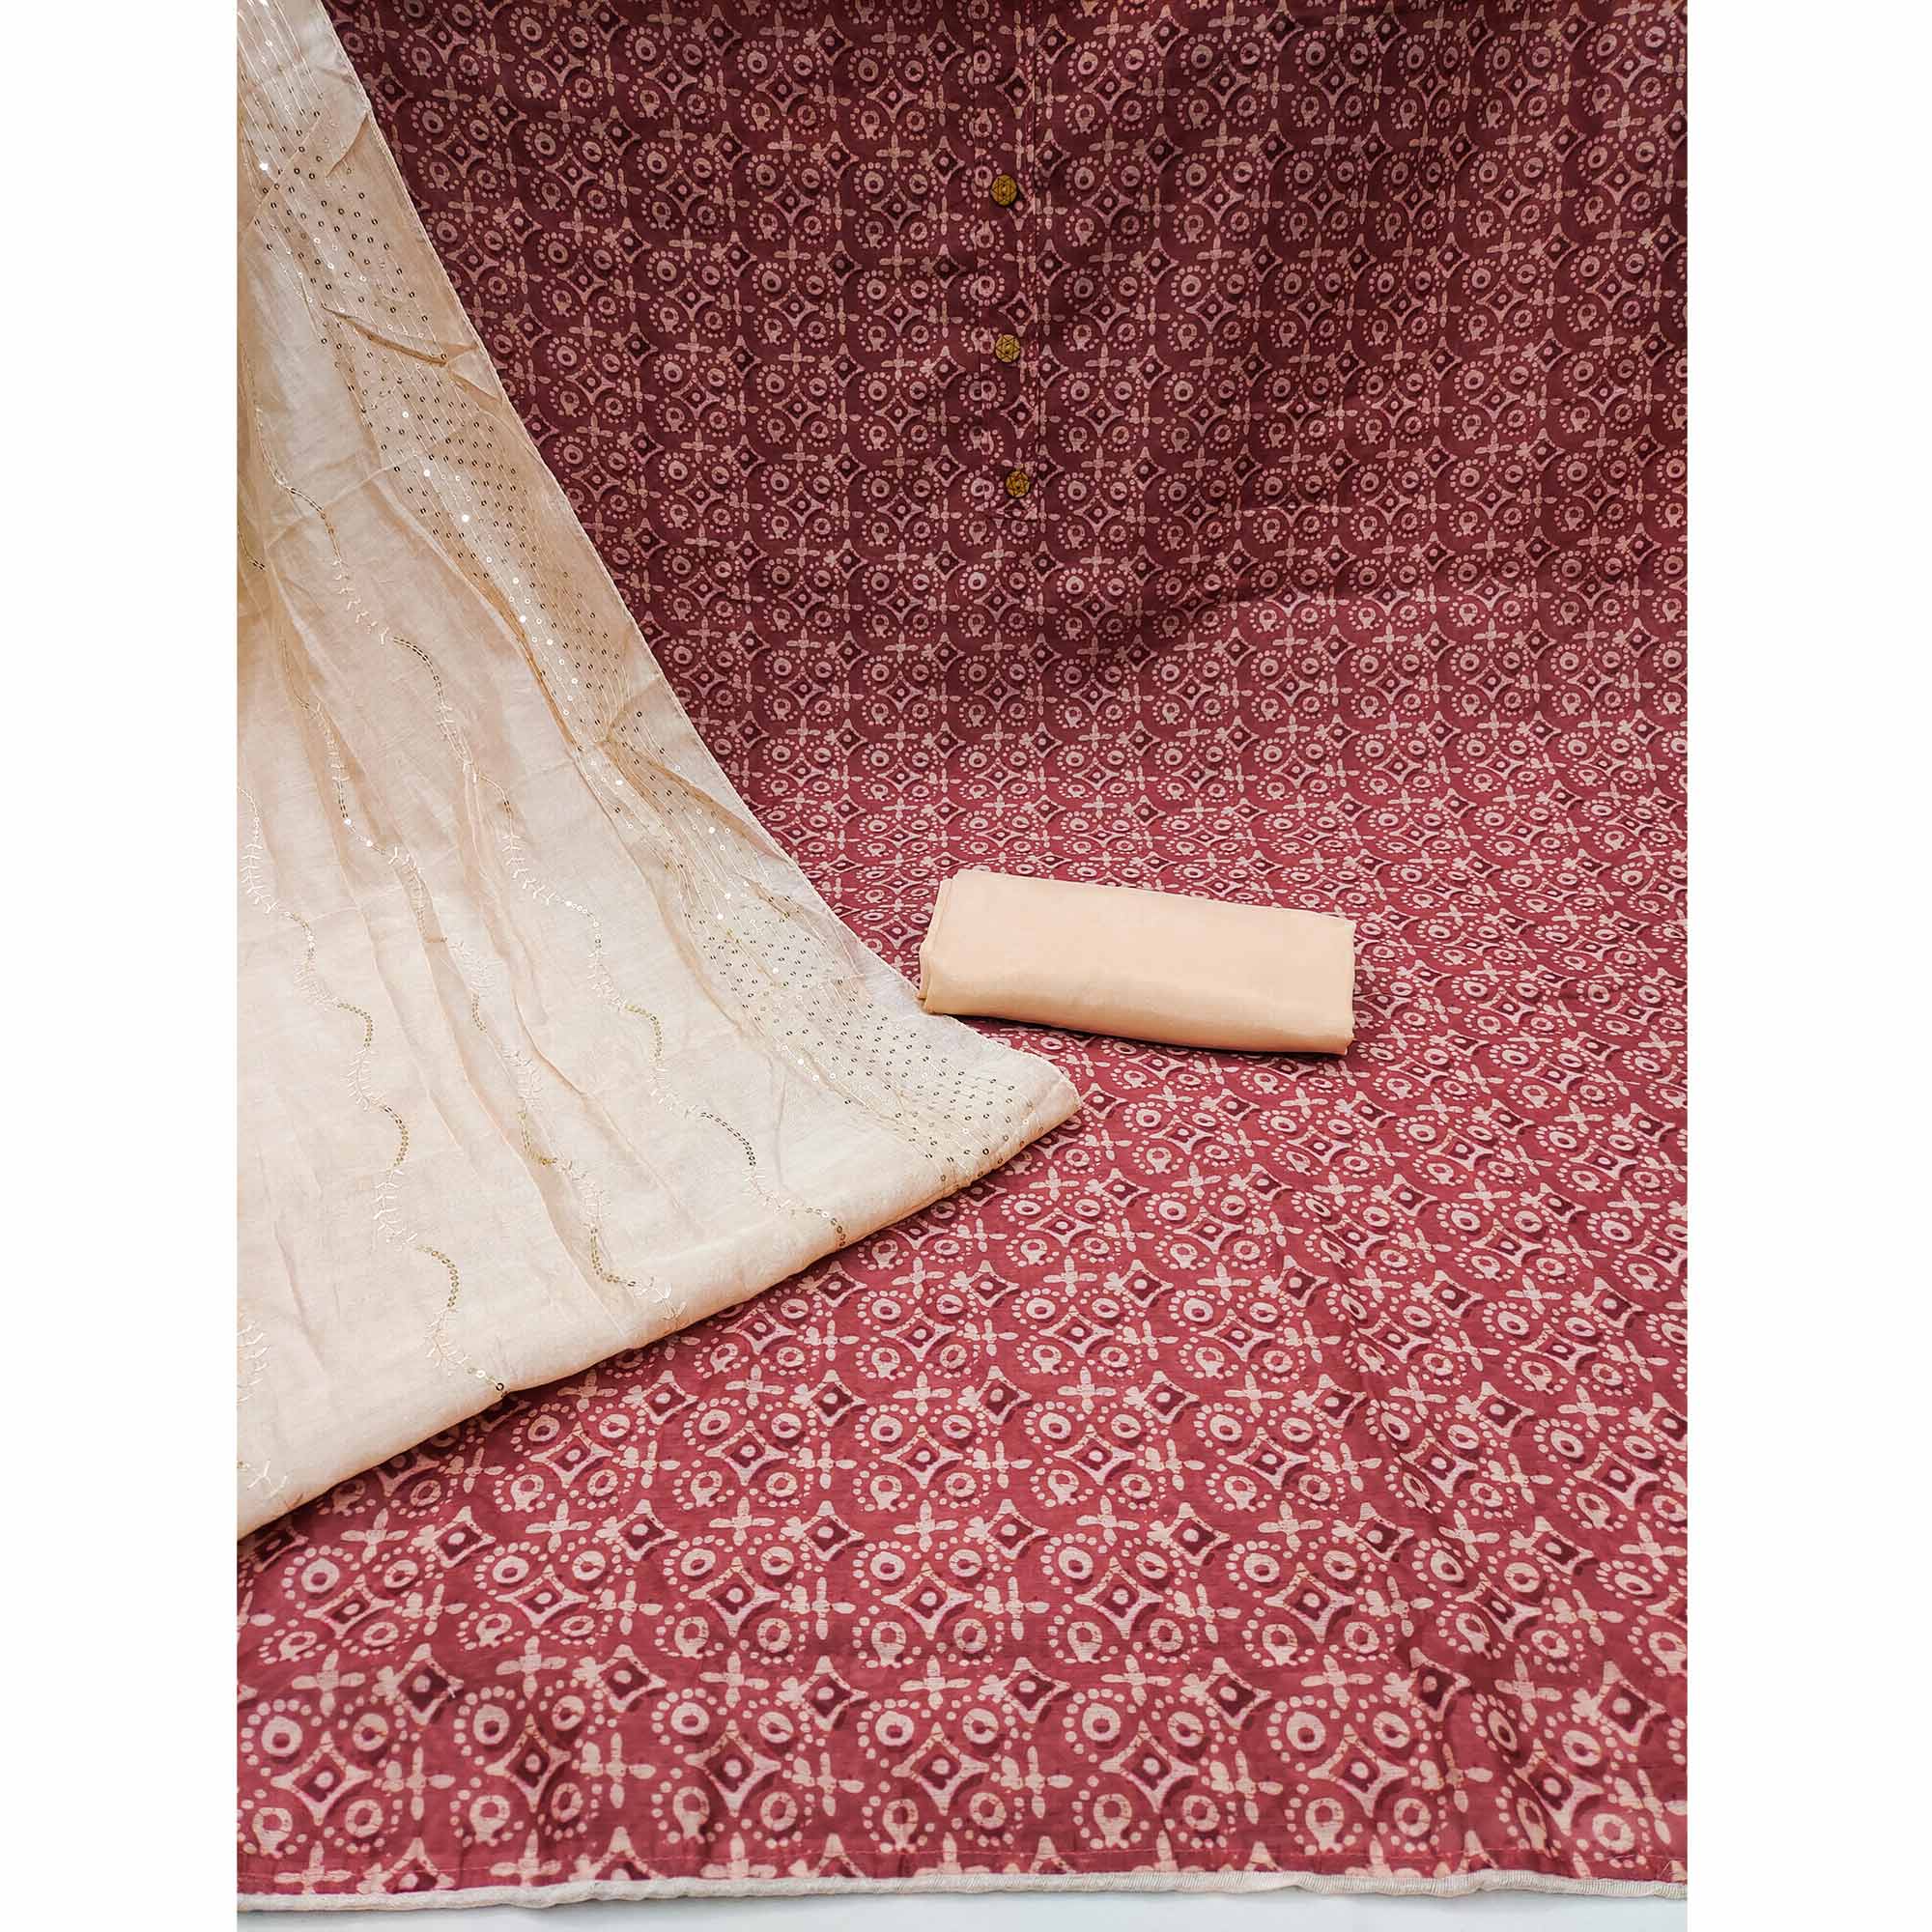 Rust Digital Printed Chanderi Dress Material